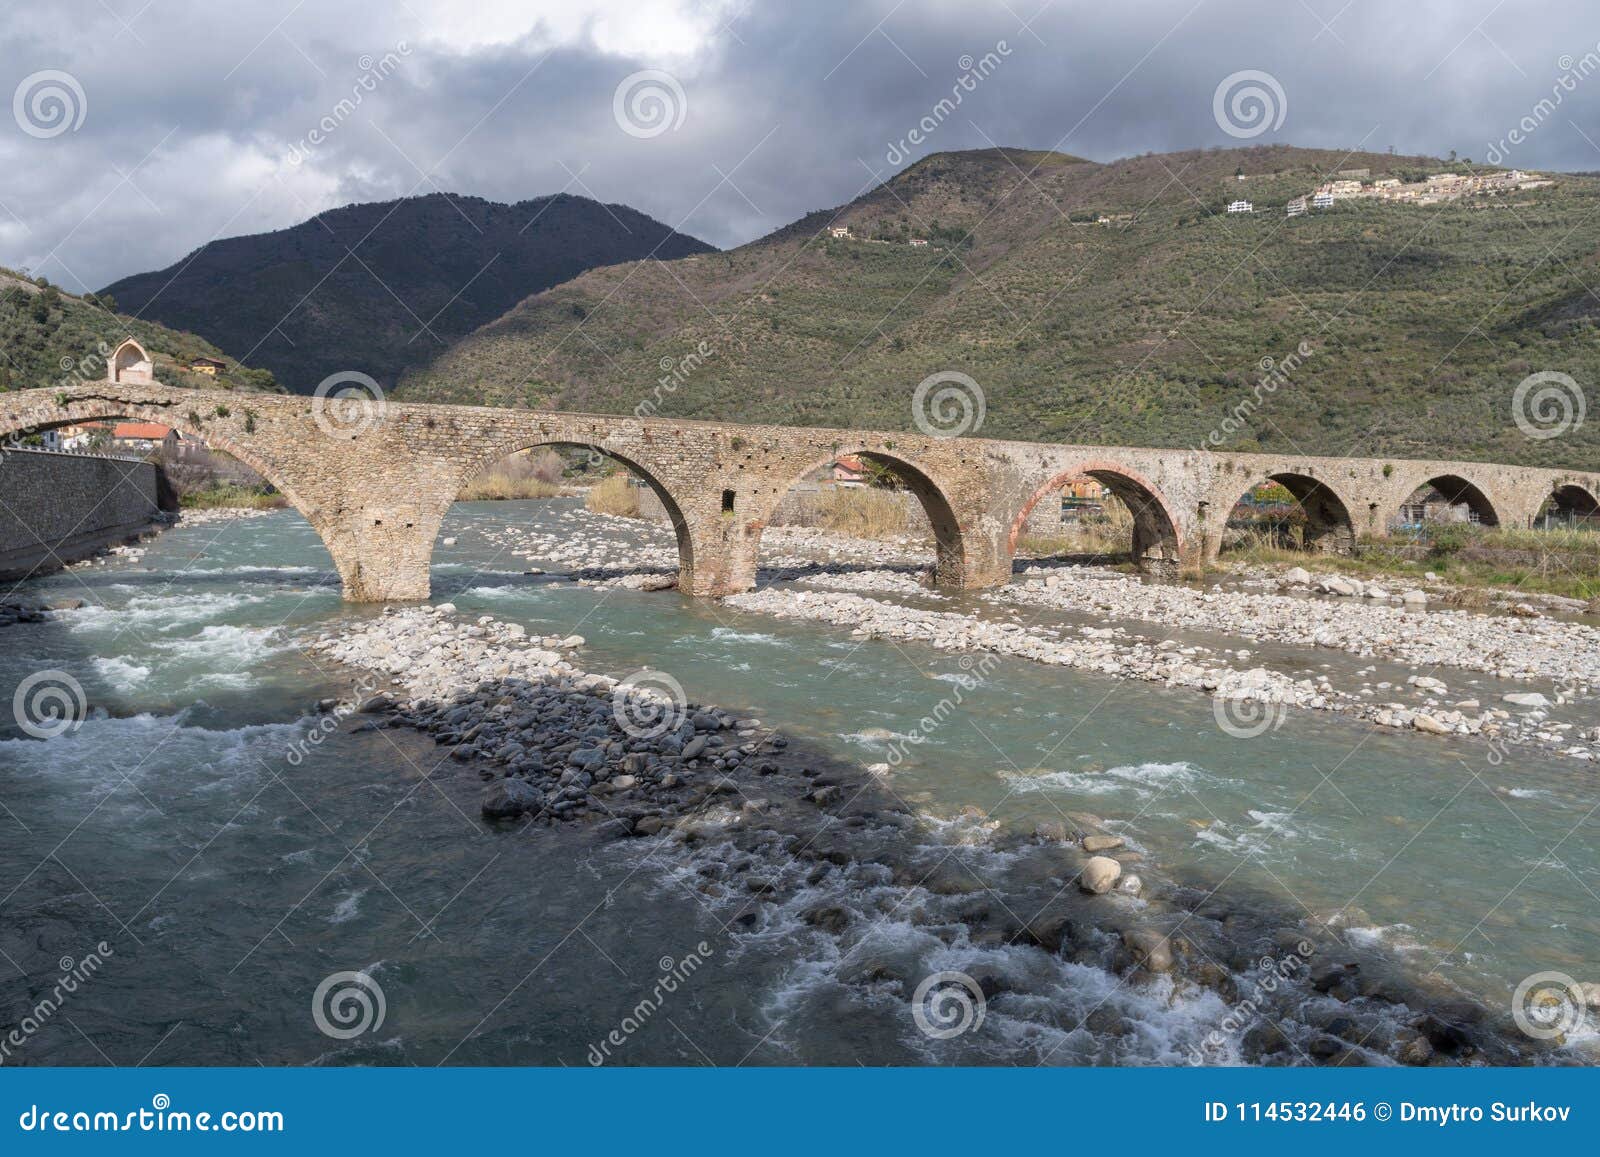 roman stone bridge, taggia, liguria, italy